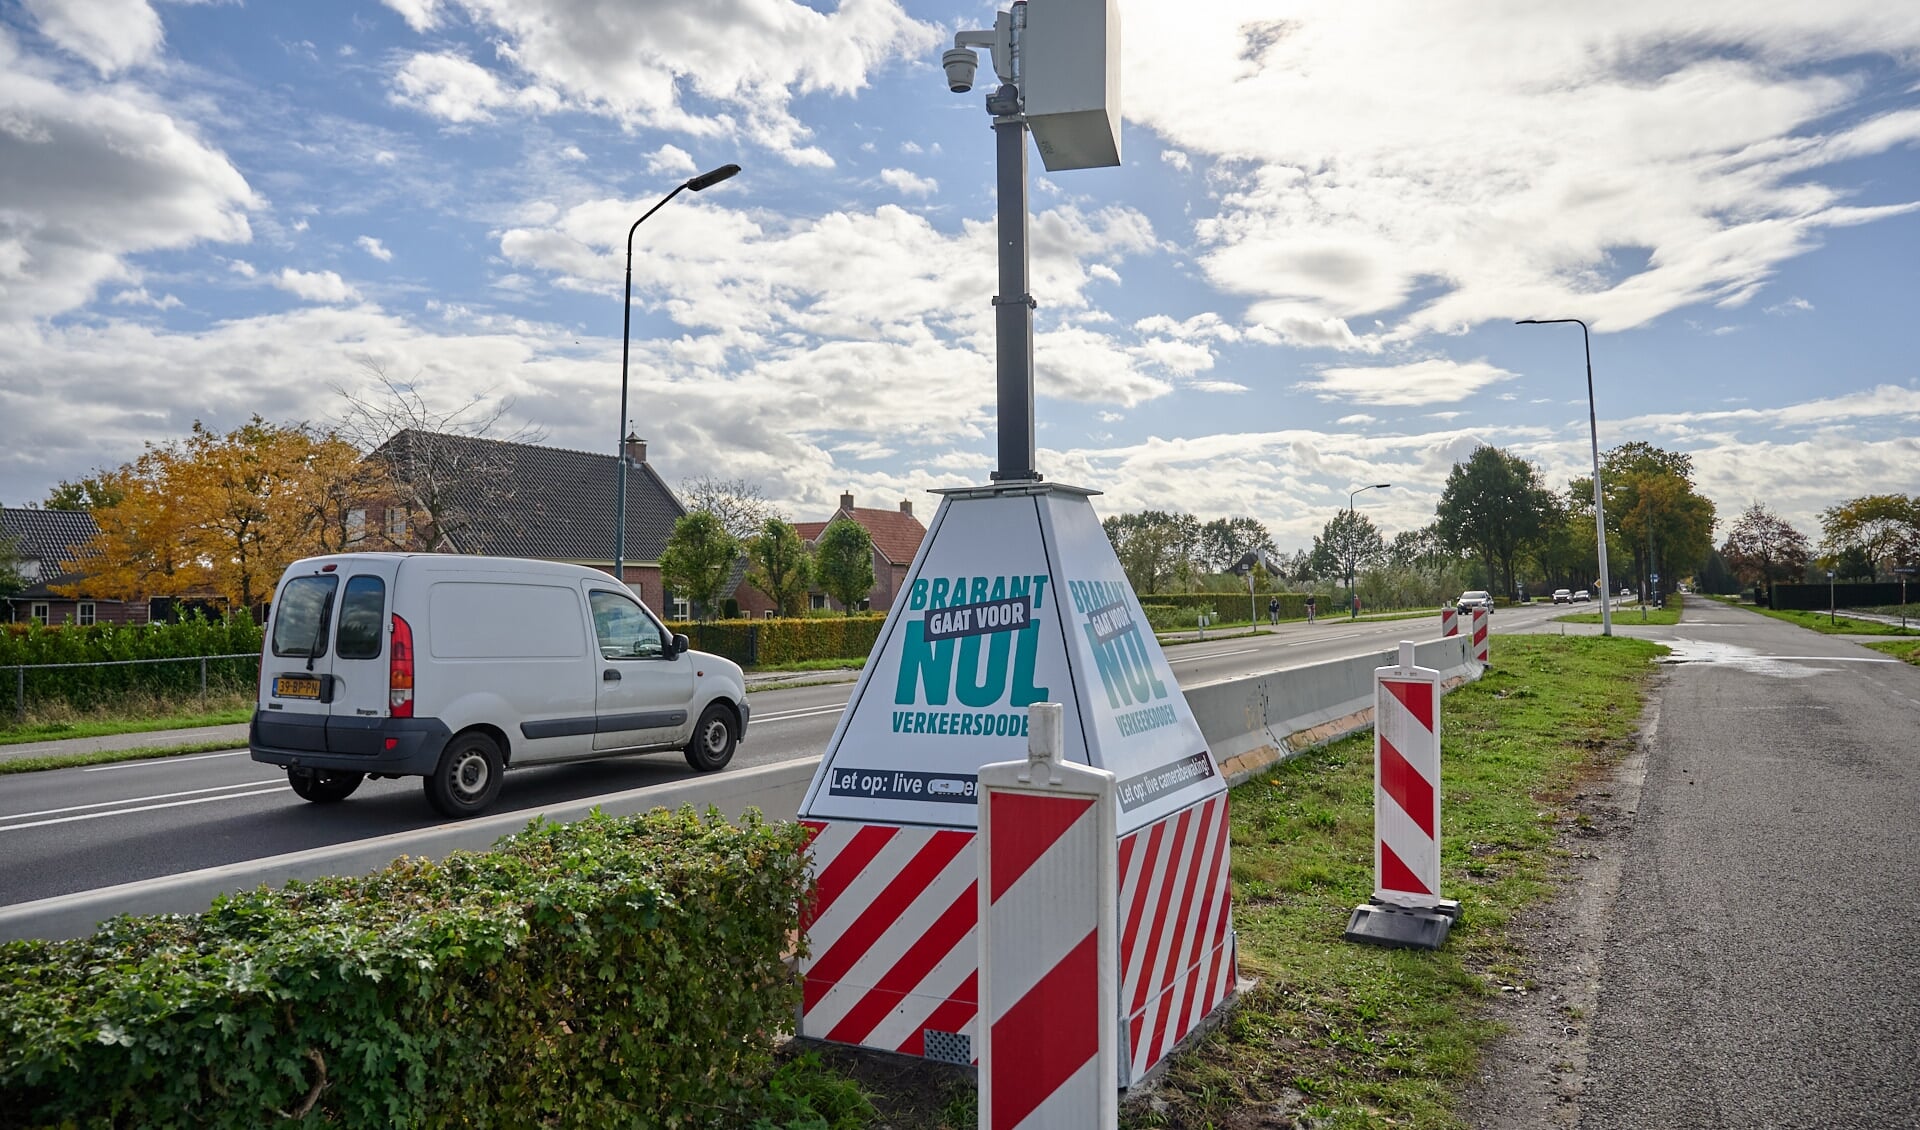 Een mobiele flitspaal, Brabant gaat voor nul verkeersdoden,